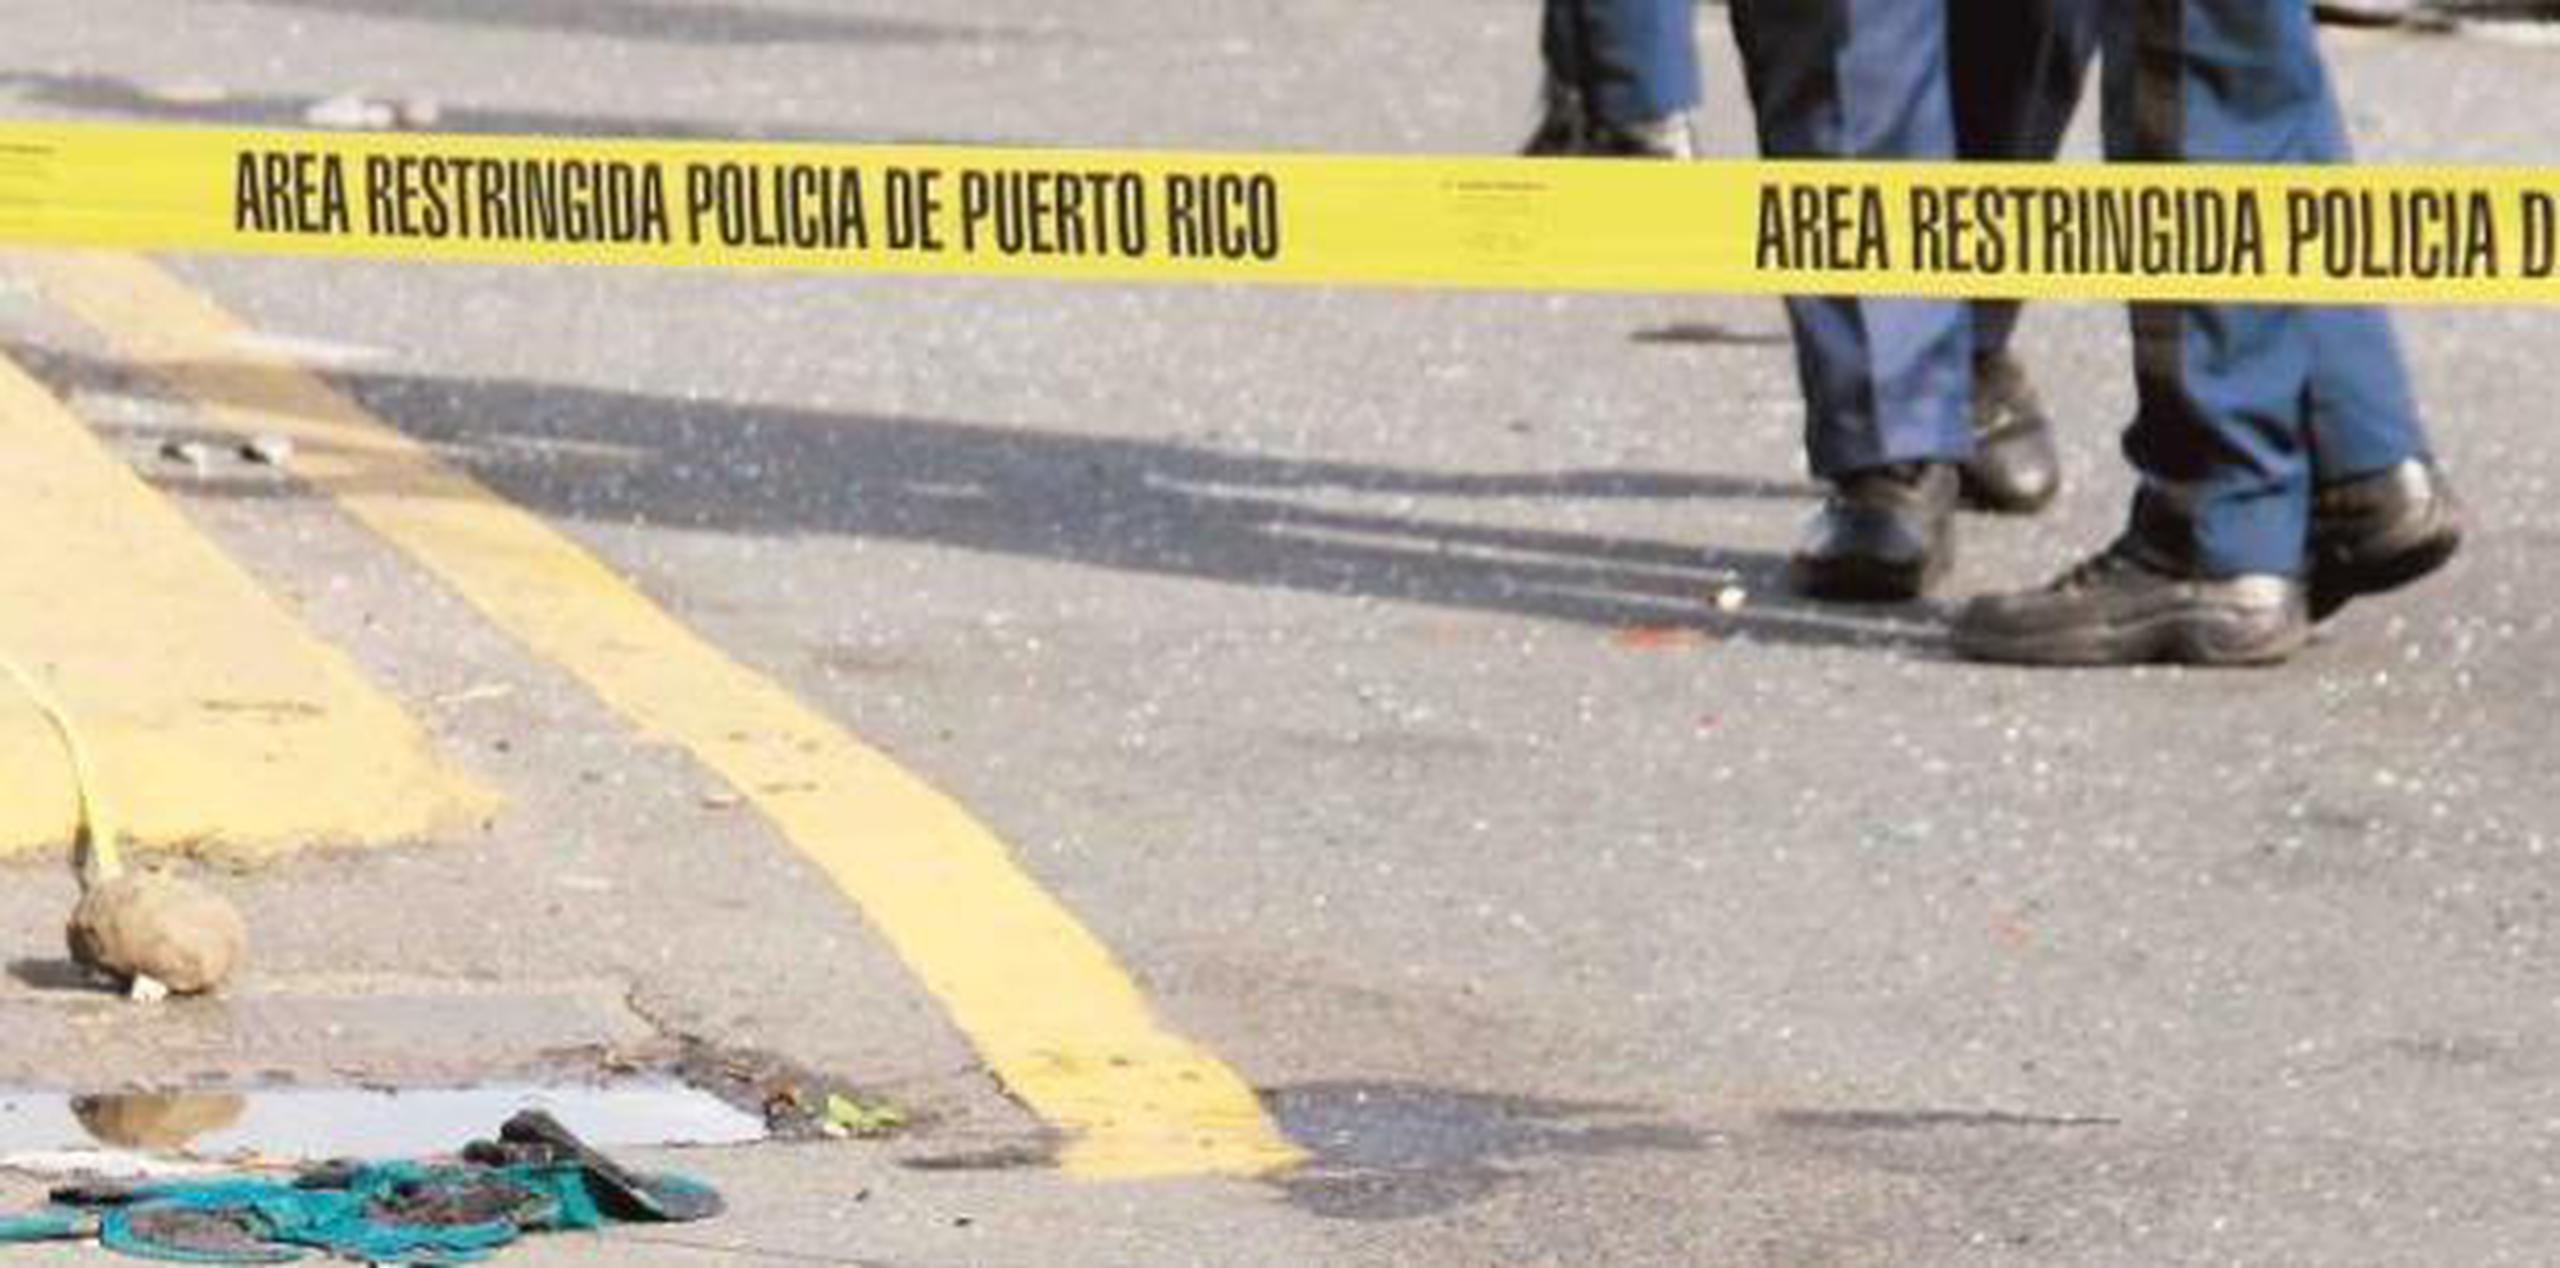 El herido fue transportado en ambulancia al Hospital Pavía de Arecibo, donde se certificó su muerte. (Archivo)